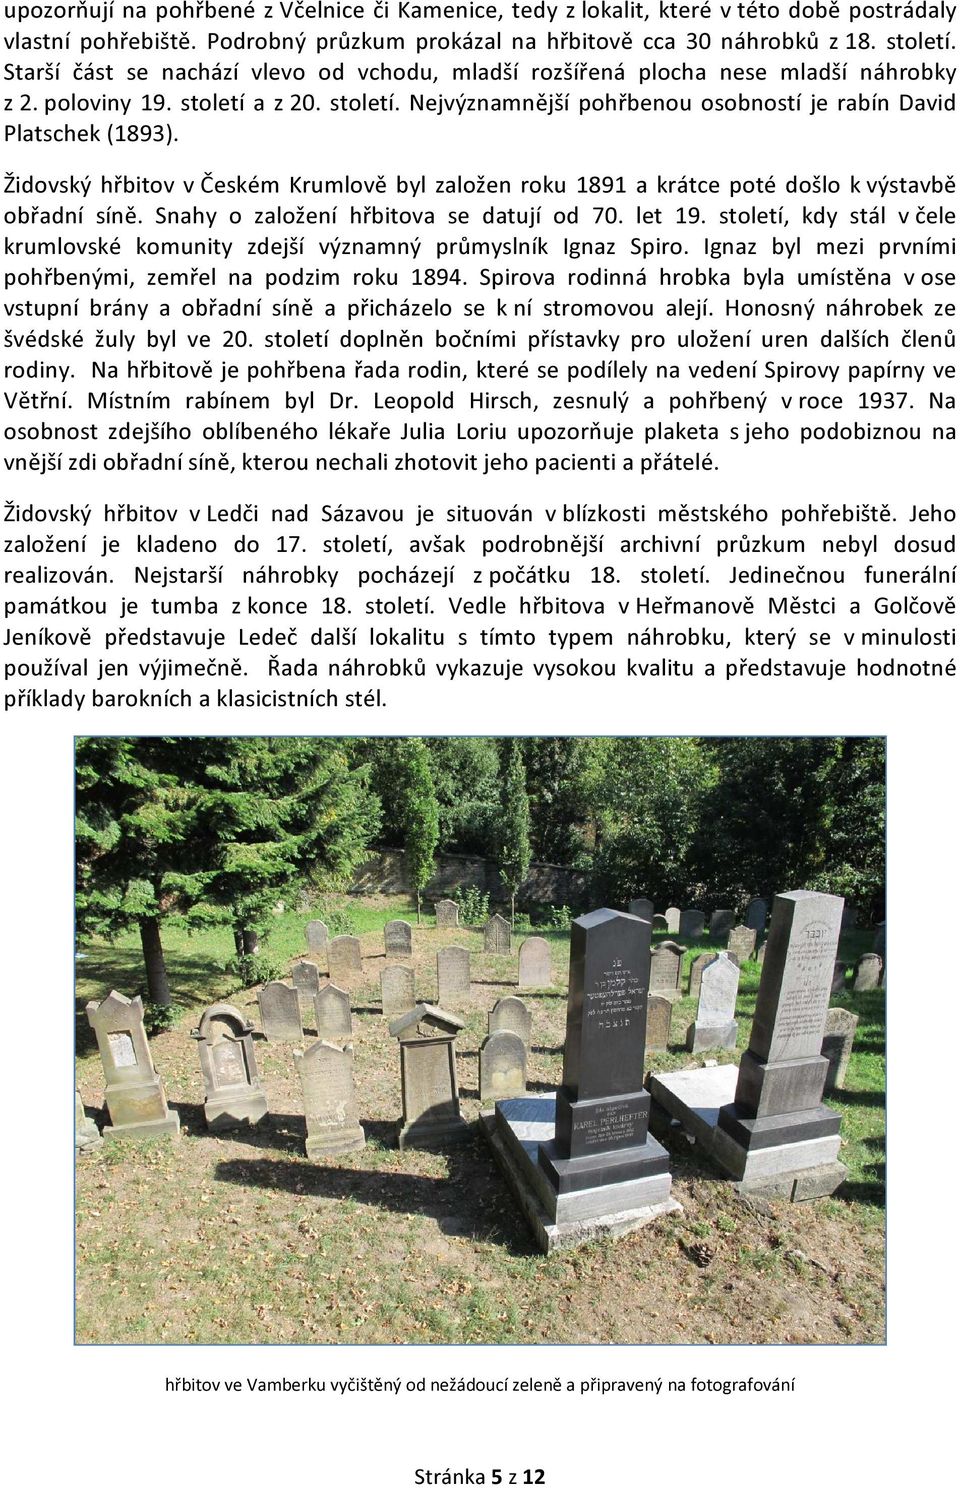 Židovský hřbitov v Českém Krumlově byl založen roku 1891 a krátce poté došlo k výstavbě obřadní síně. Snahy o založení hřbitova se datují od 70. let 19.